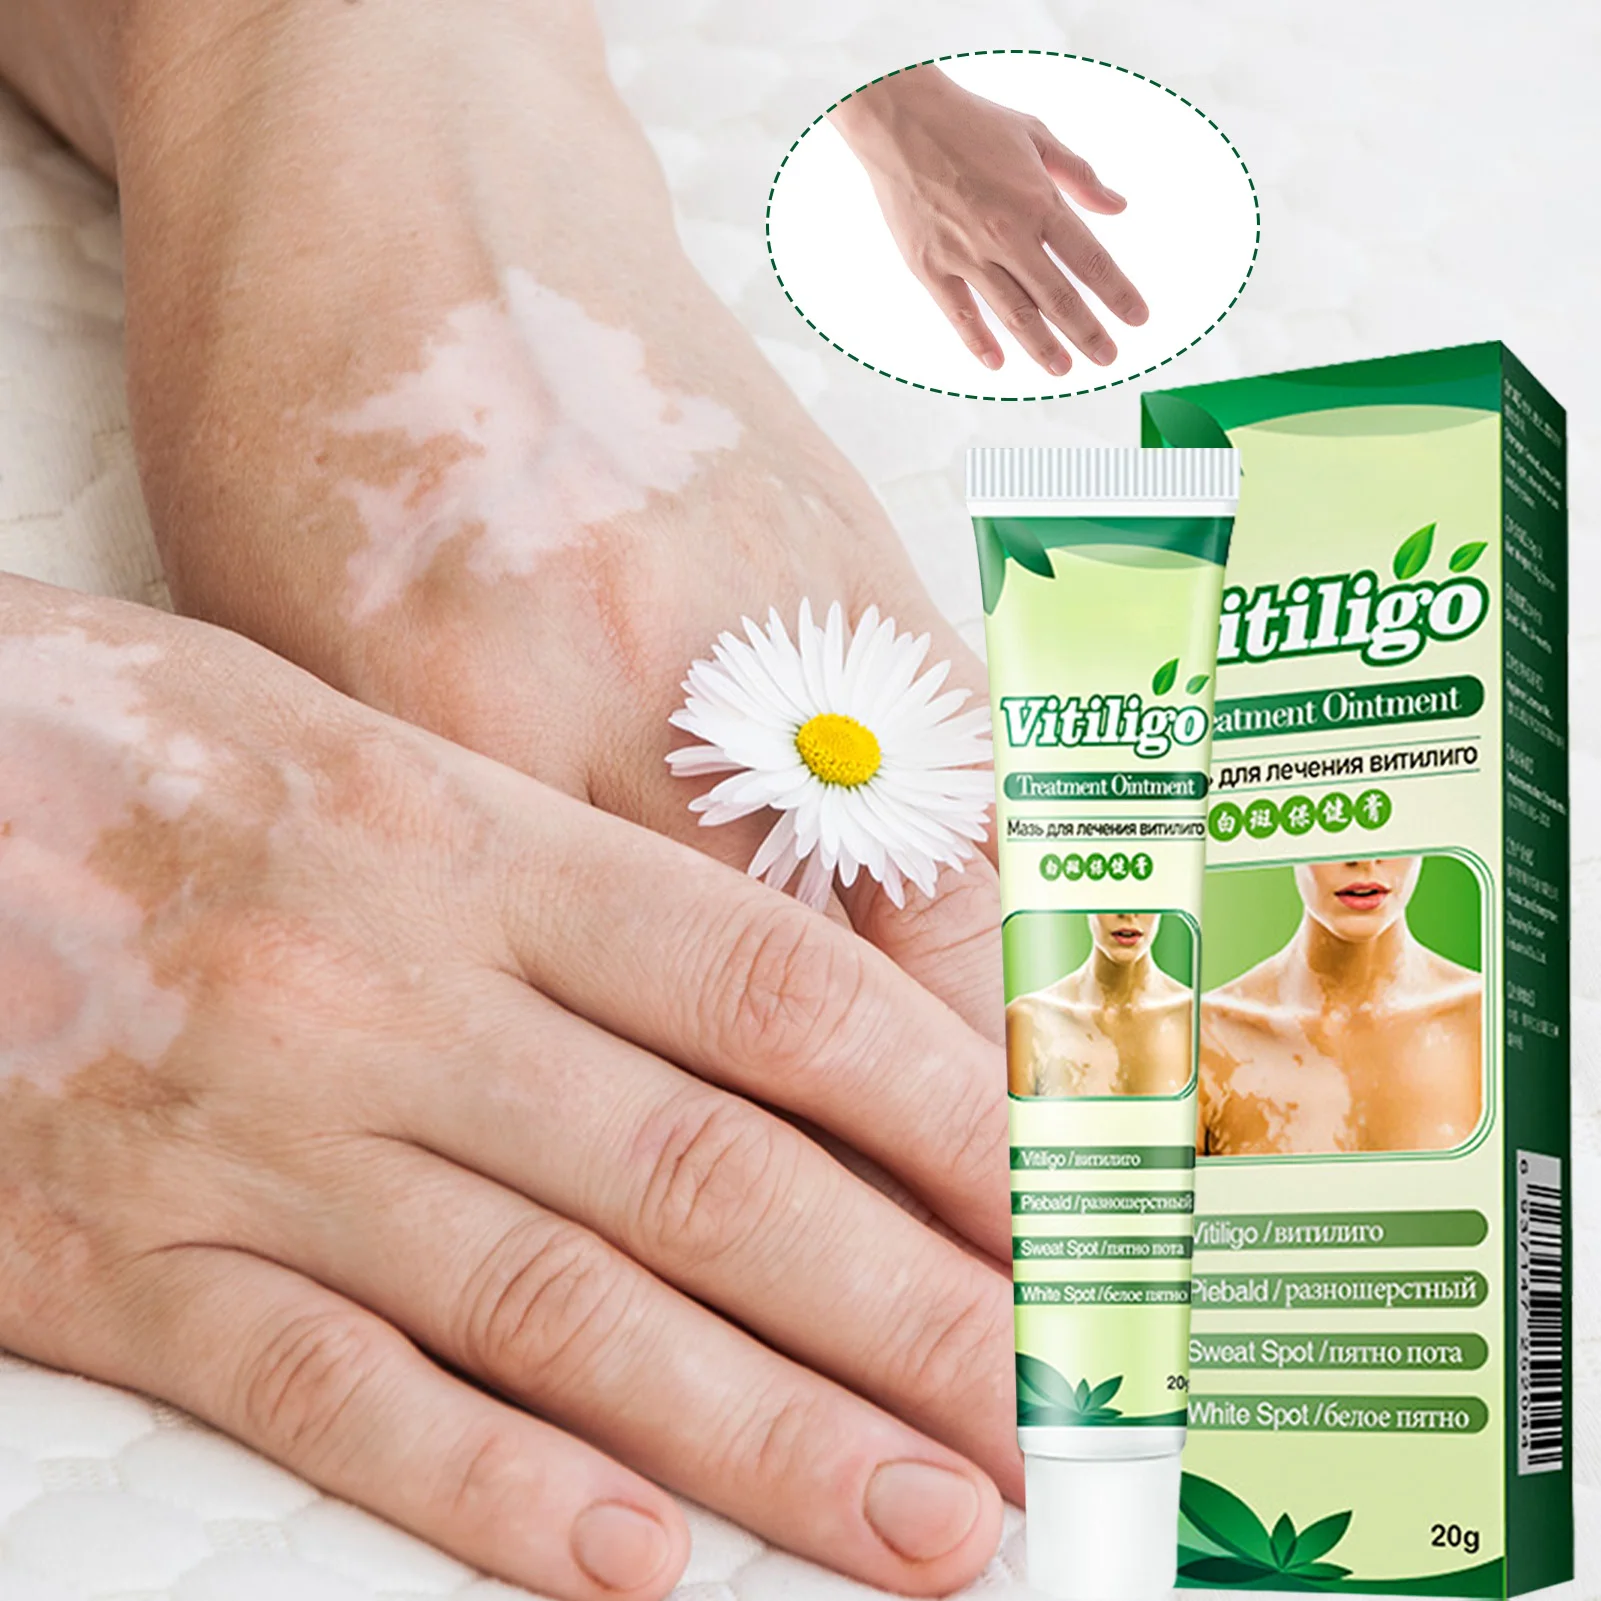 

20g Vitiligo Treatment Cream Skin Pigmentation Treatment Vitiligo Care Cream Or Skin Vitiligo Leukoplakia Improve Skin